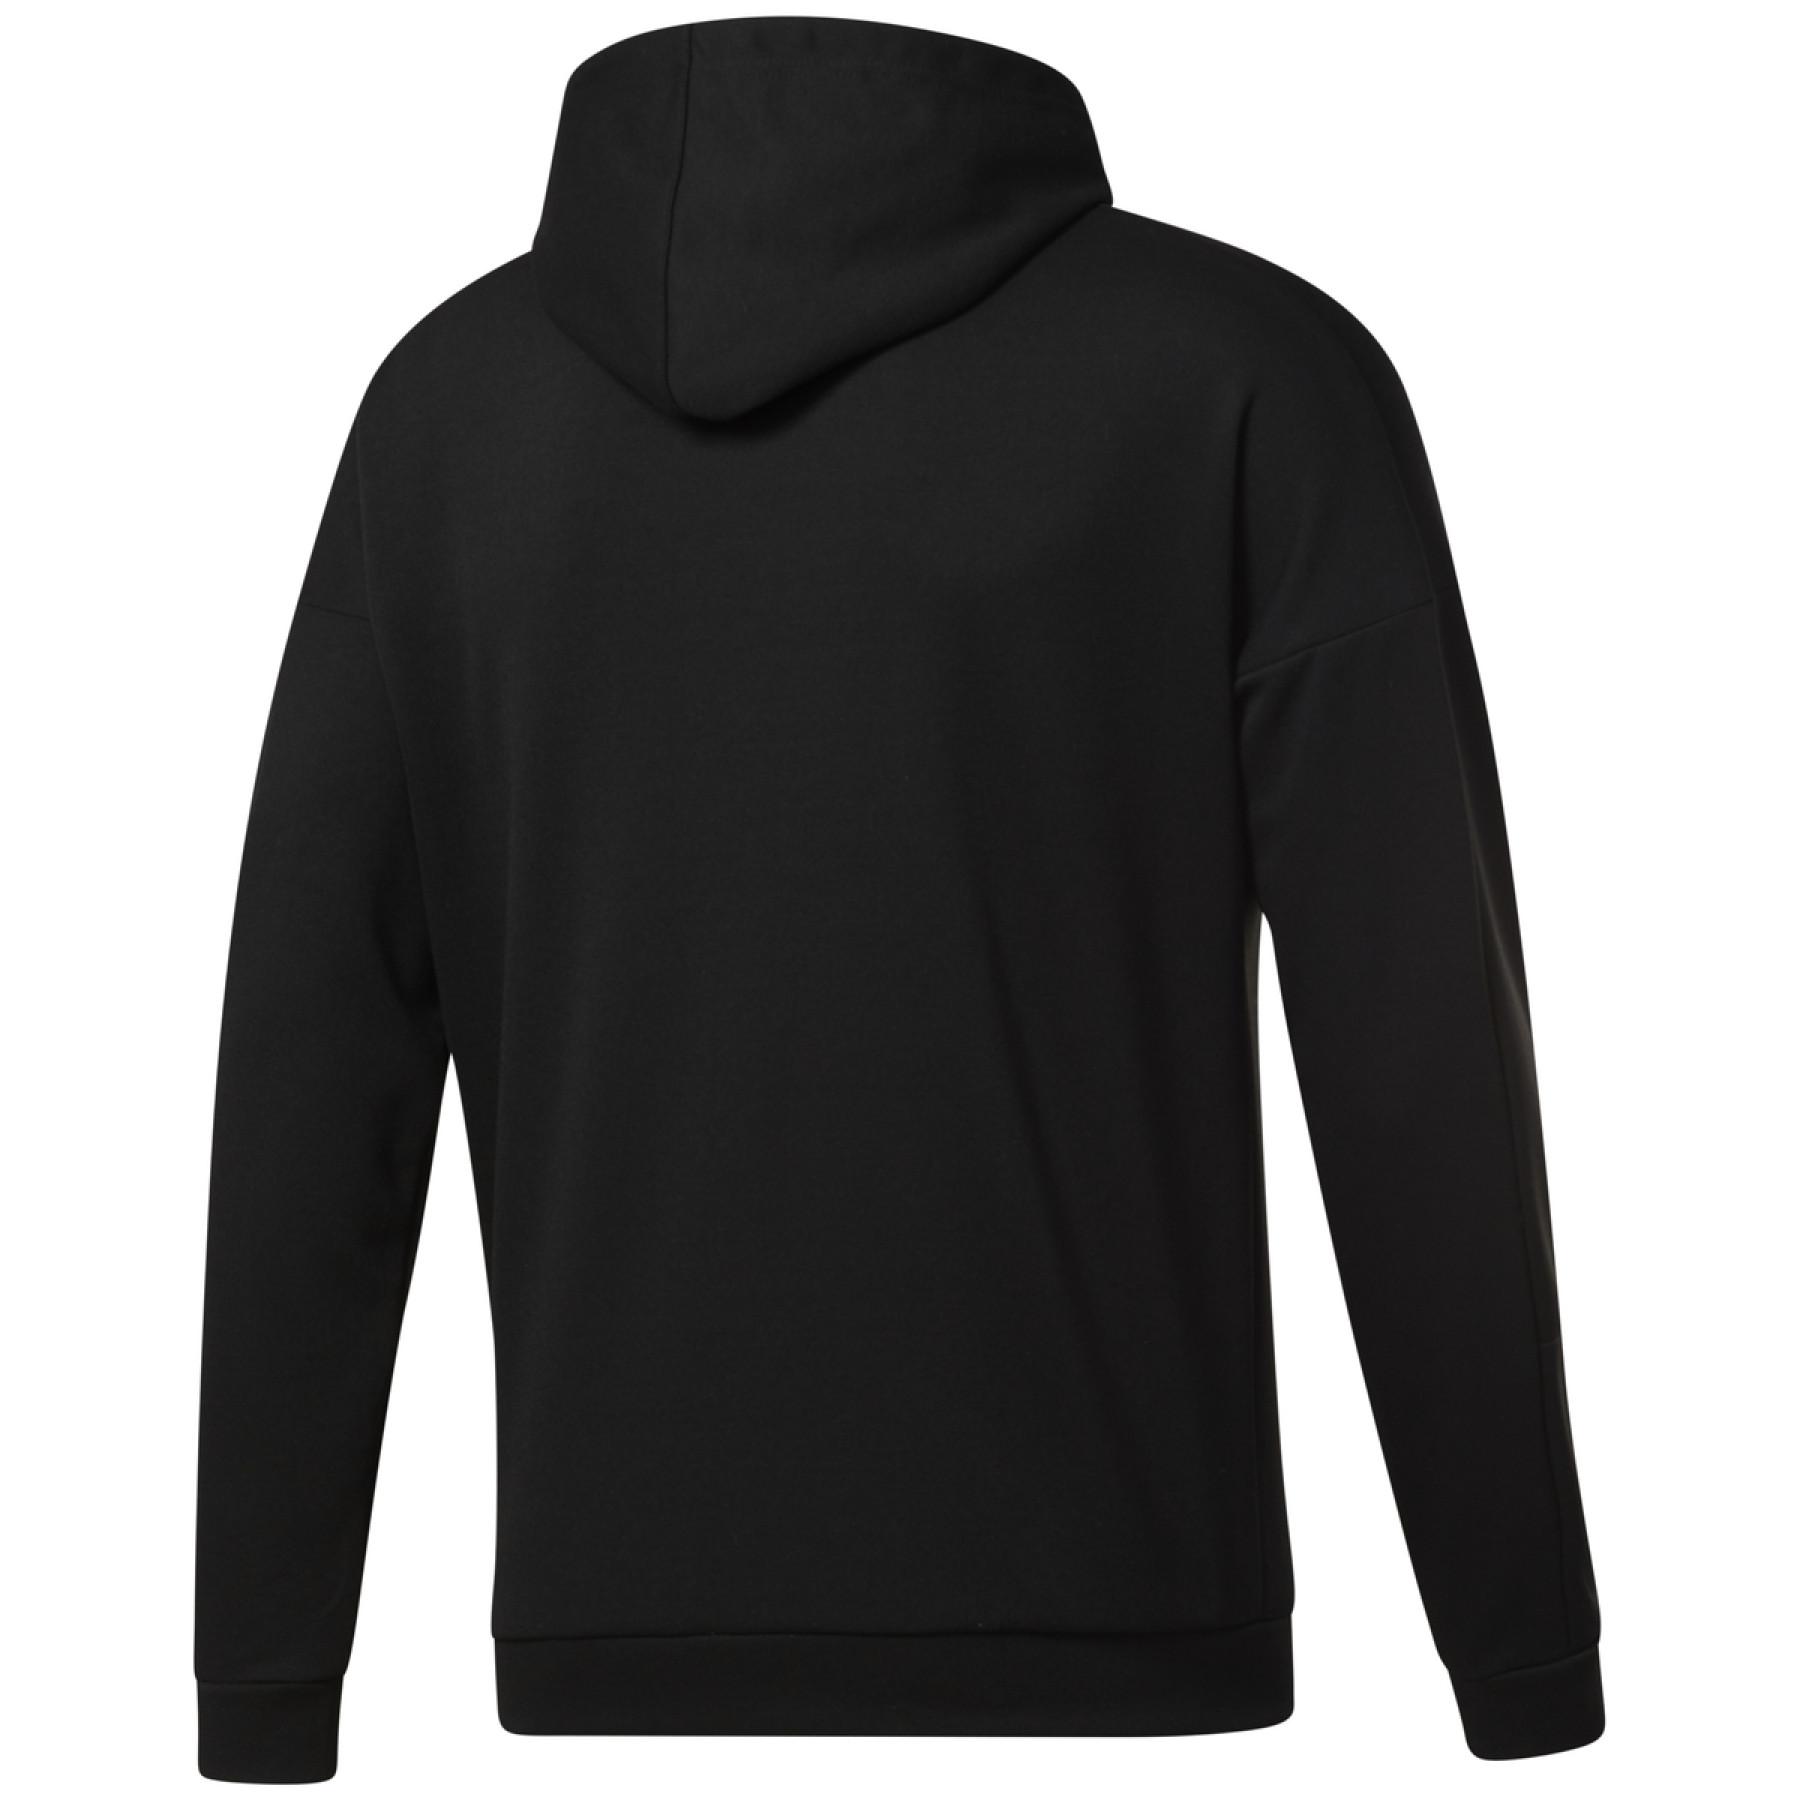 Hooded sweatshirt Reebok Workout Ready Doubleknit Zip-Up